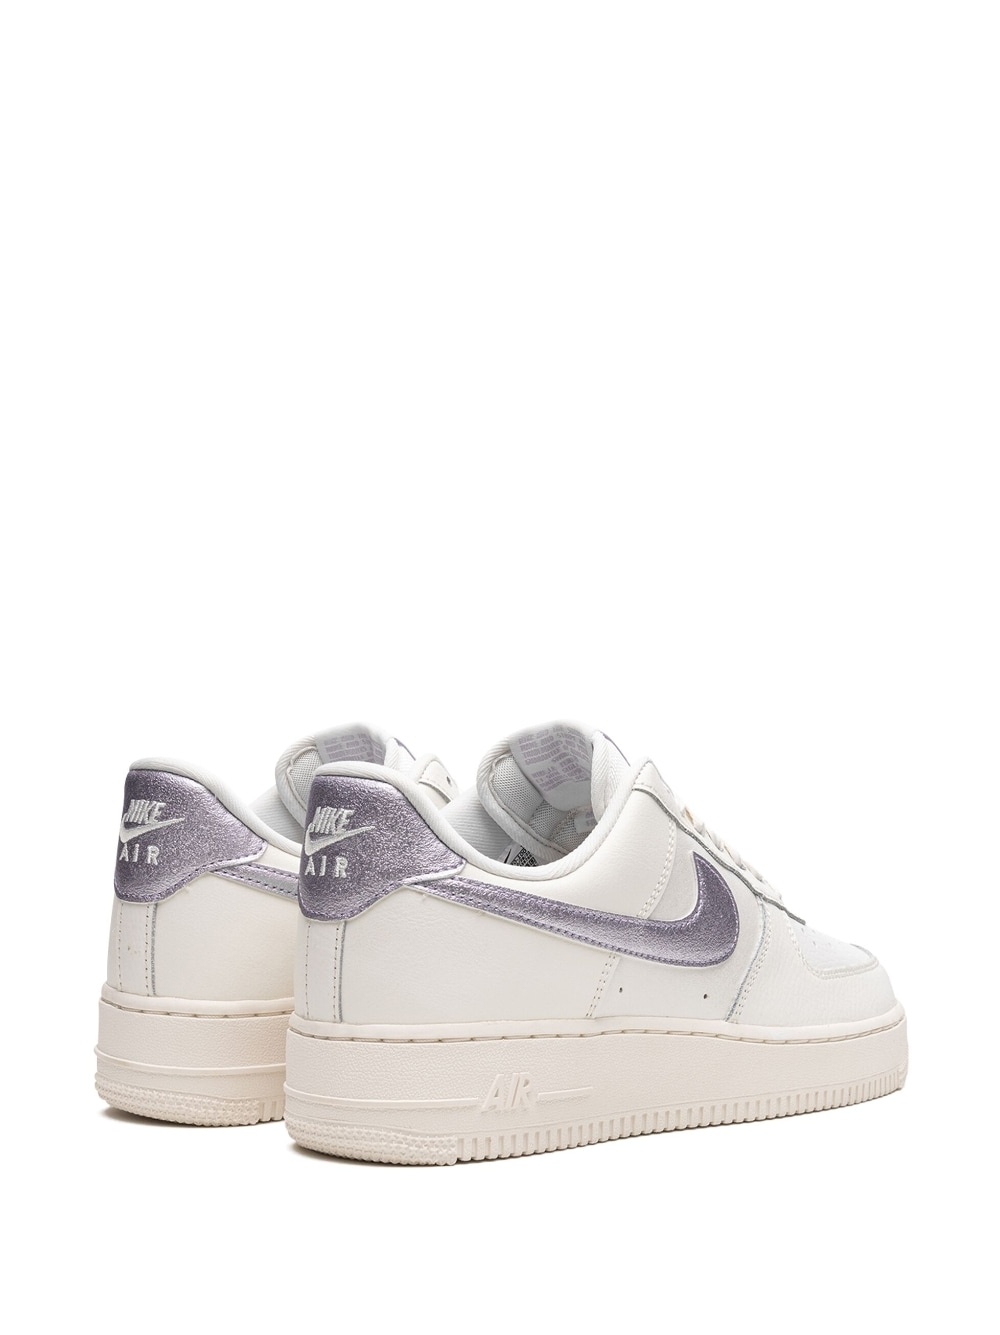 Air Force 1 "Metallic Purple" sneakers - 3